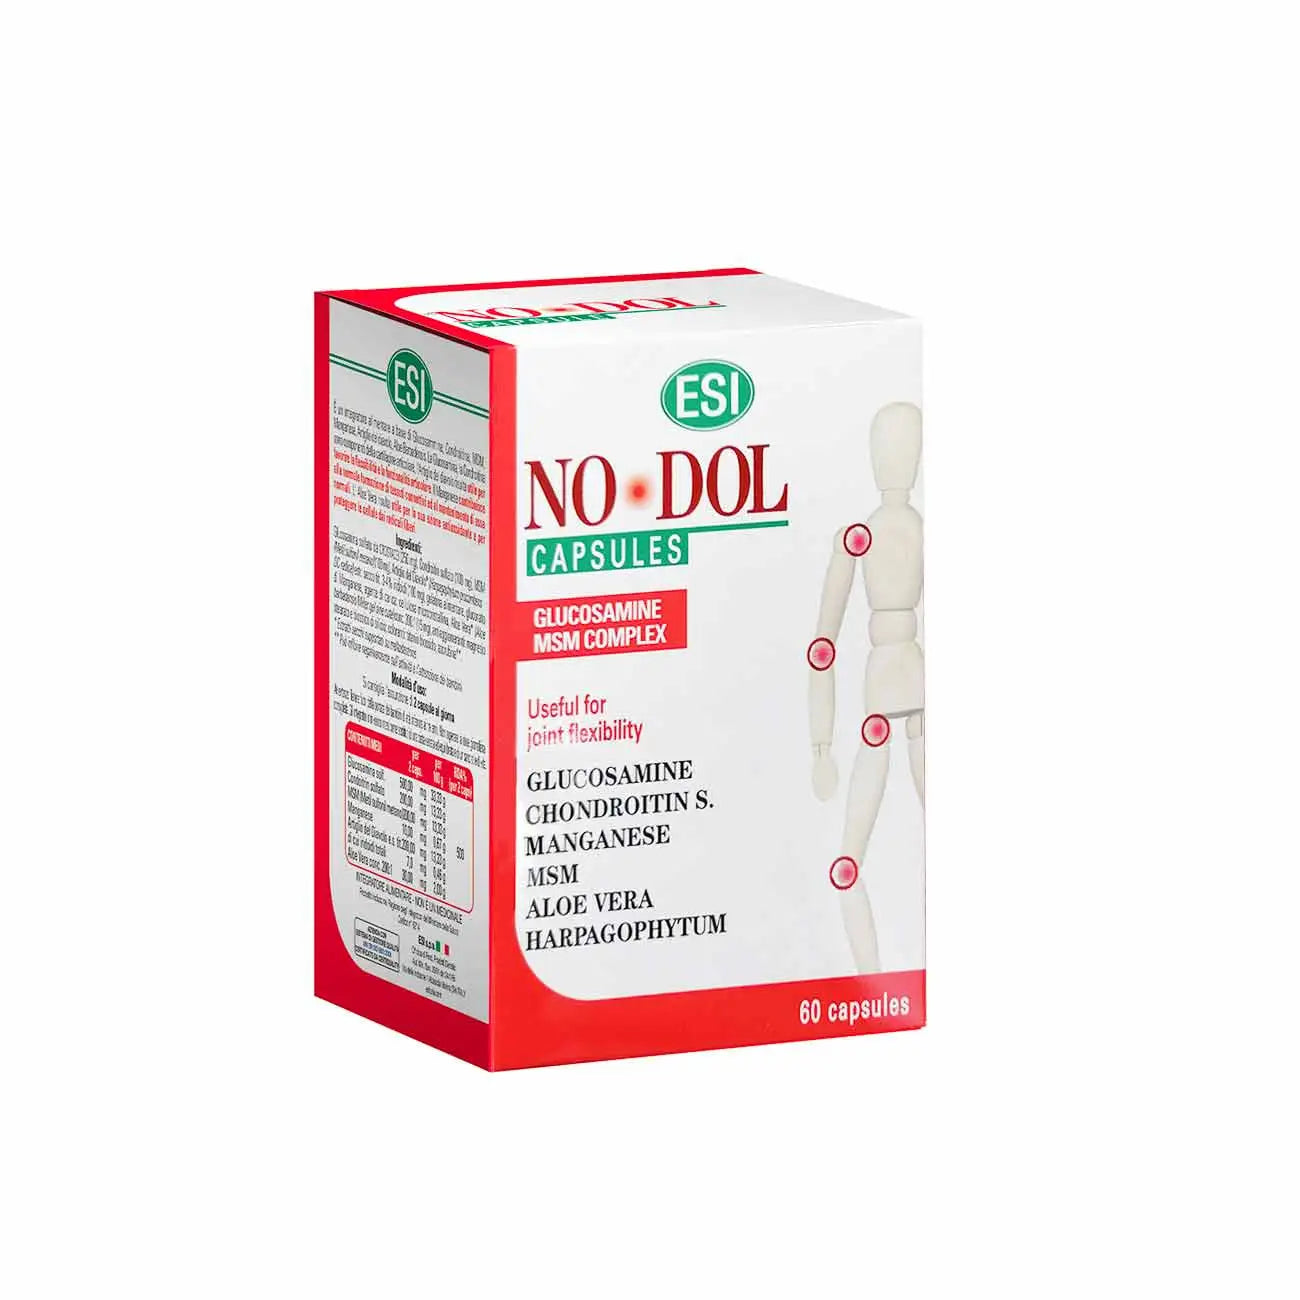 ESI Nodol capsules- 60 capsules –